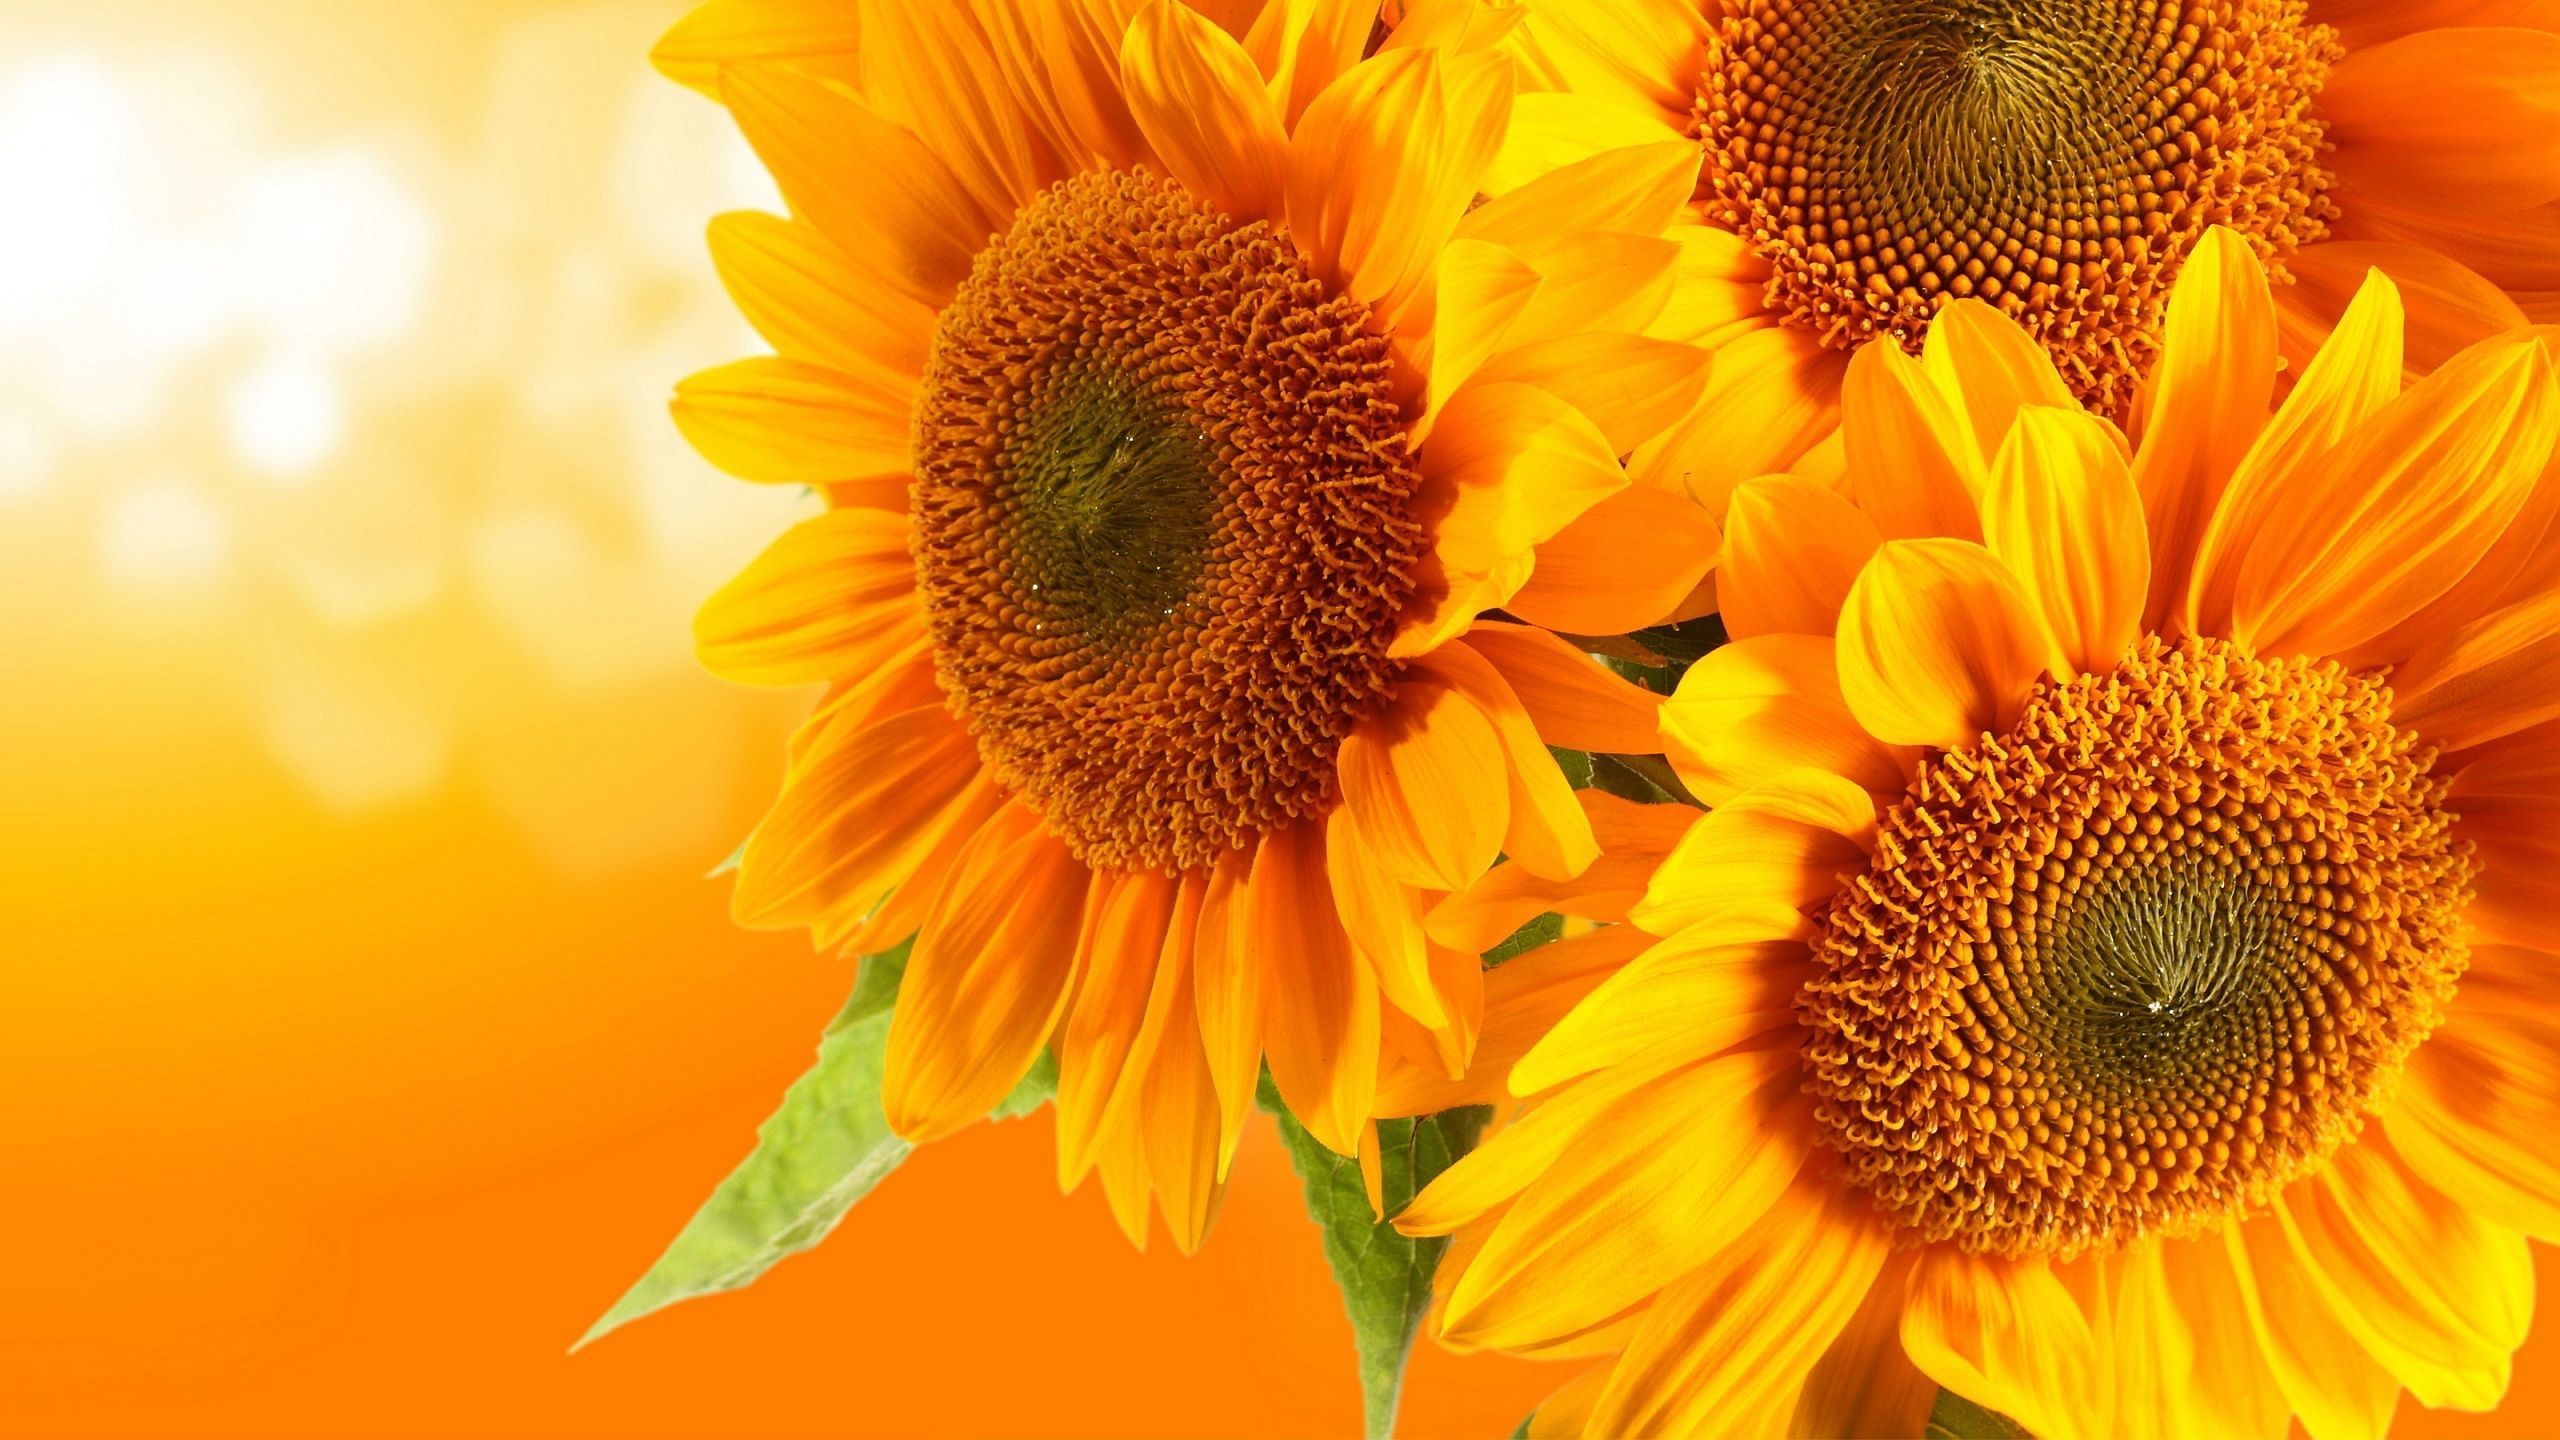 Whimsical Sunflower Desktop Wallpaper Free Whimsical